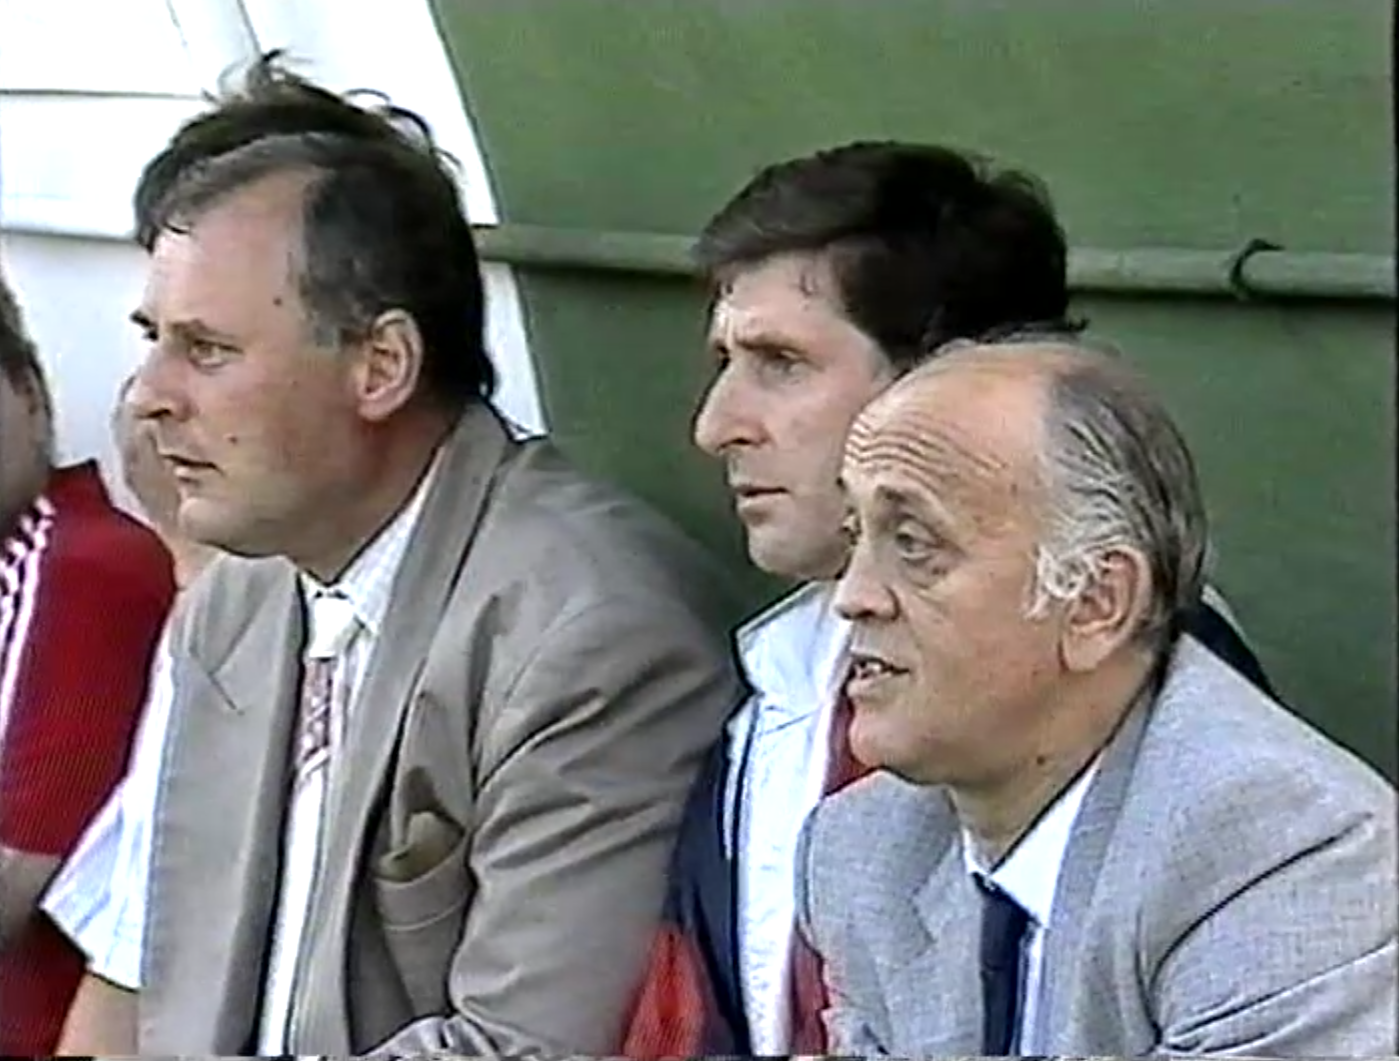 Sztab trenerski reprezentacji Polski (od lewej): Jan Tomaszewski, Lesław Ćmikiewicz i Andrzej Strejlau.